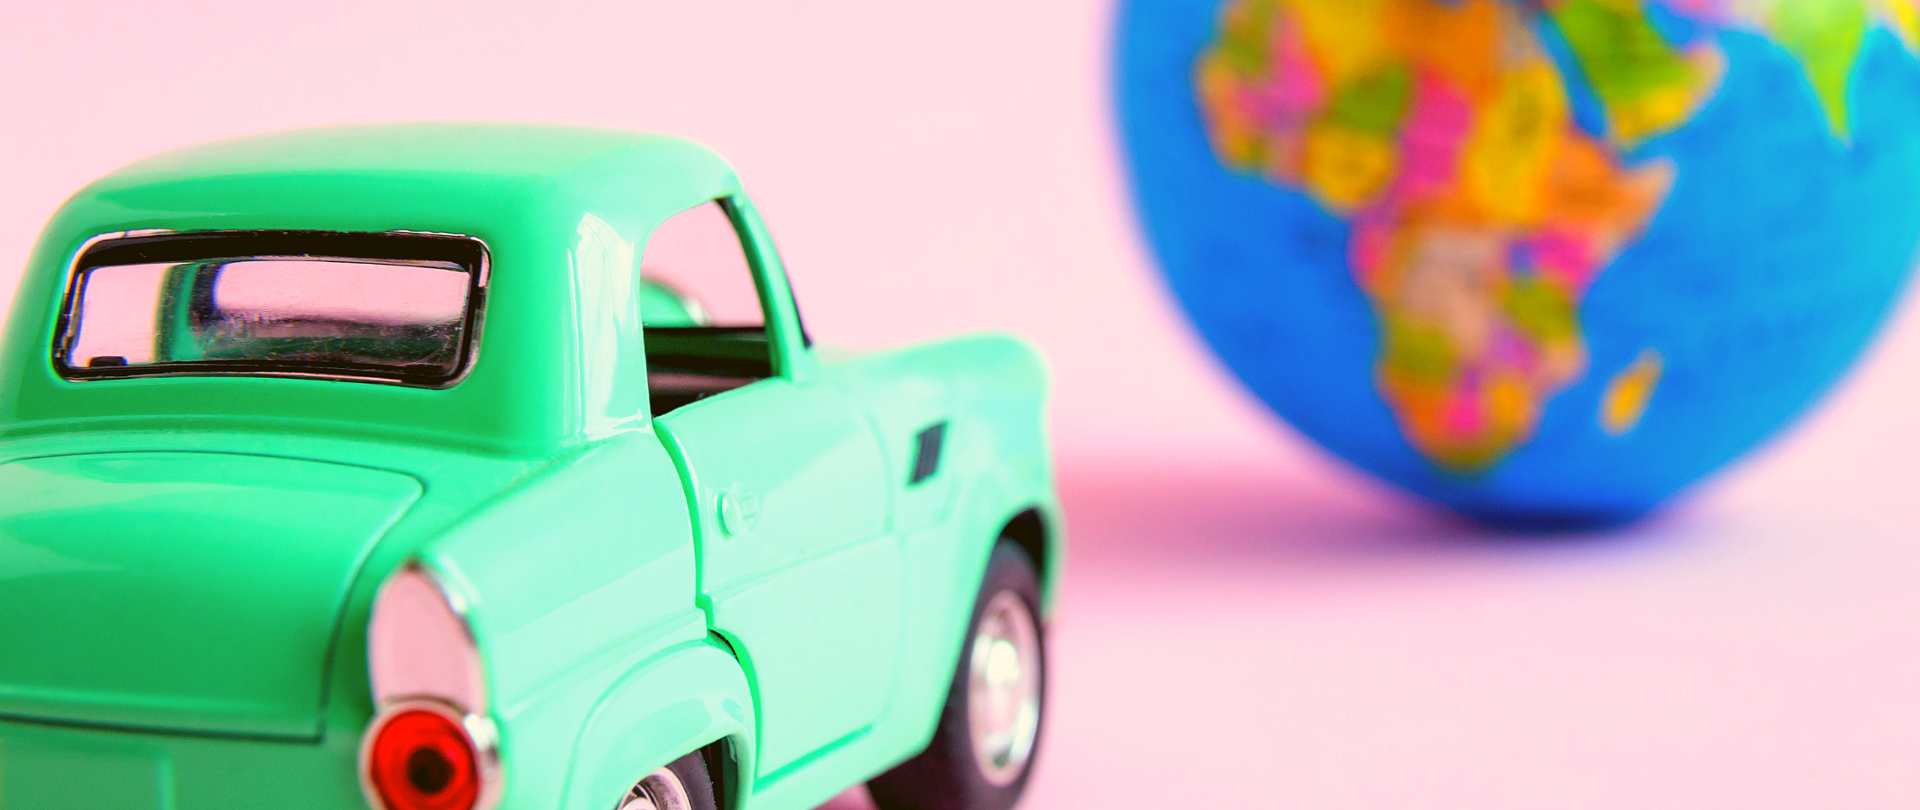 Samochód - zabawka oraz globus